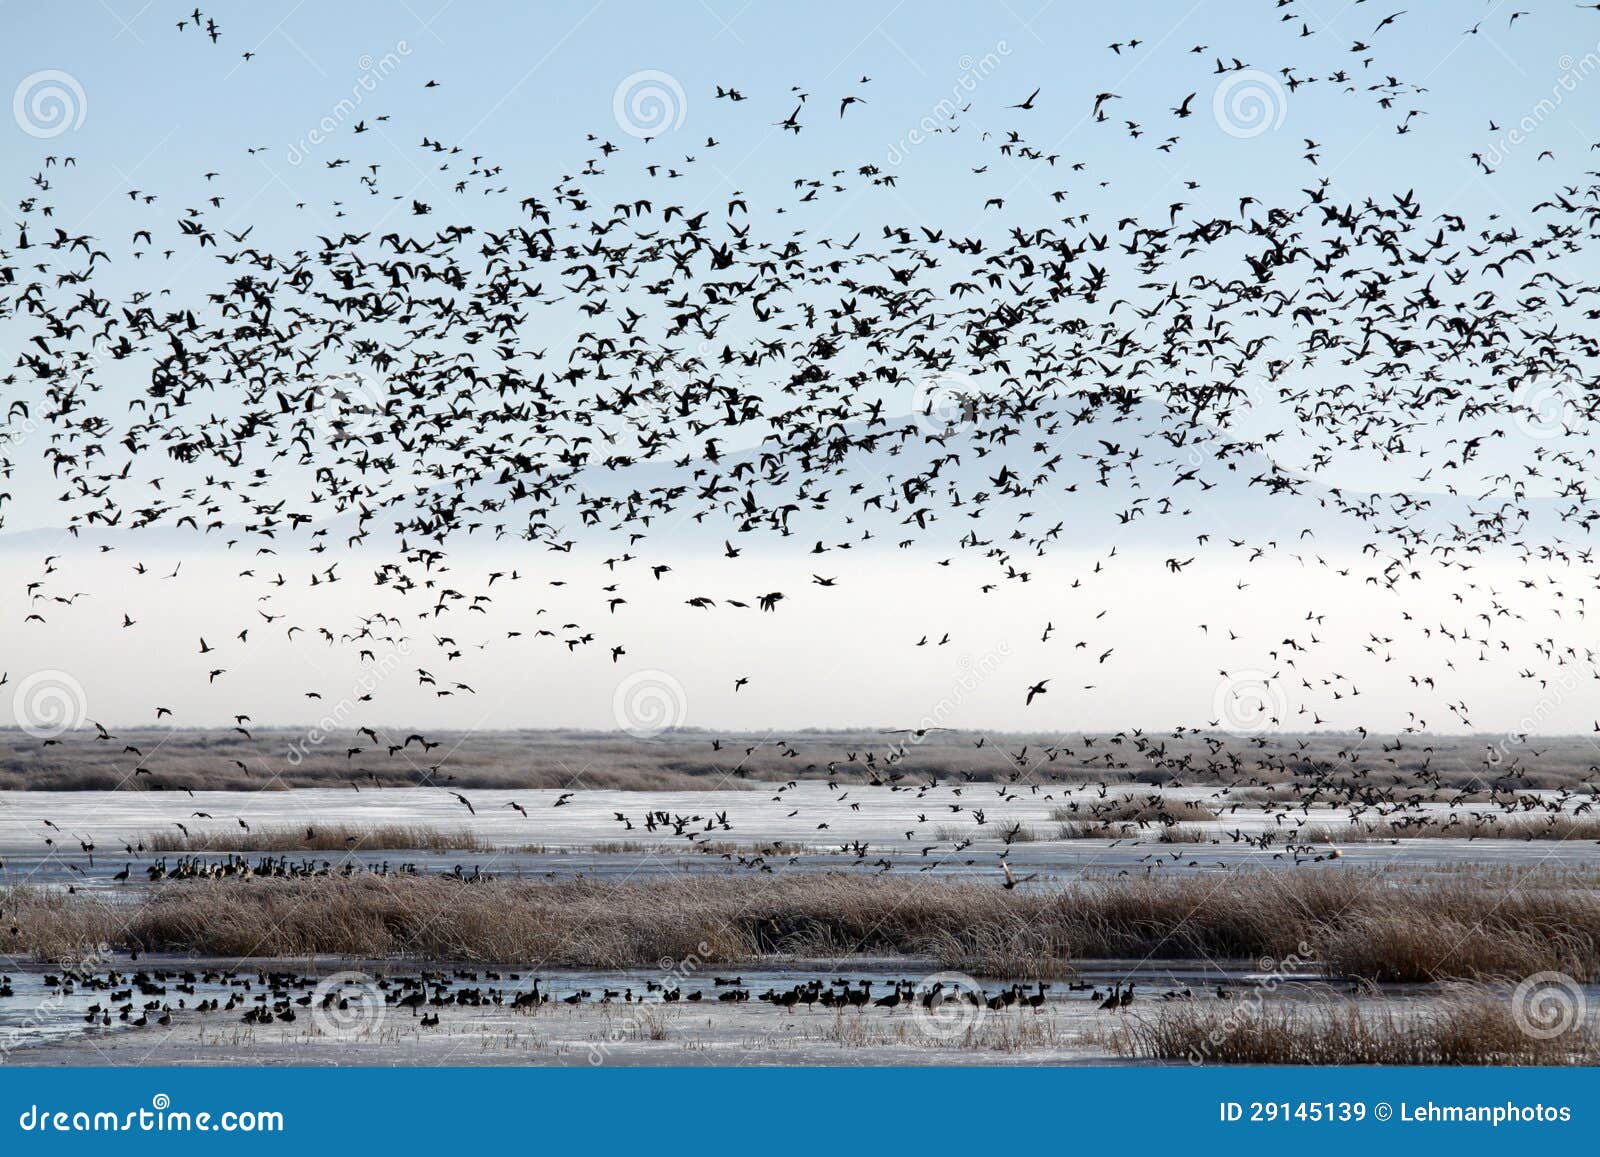 flock of migratory birds over a marsh